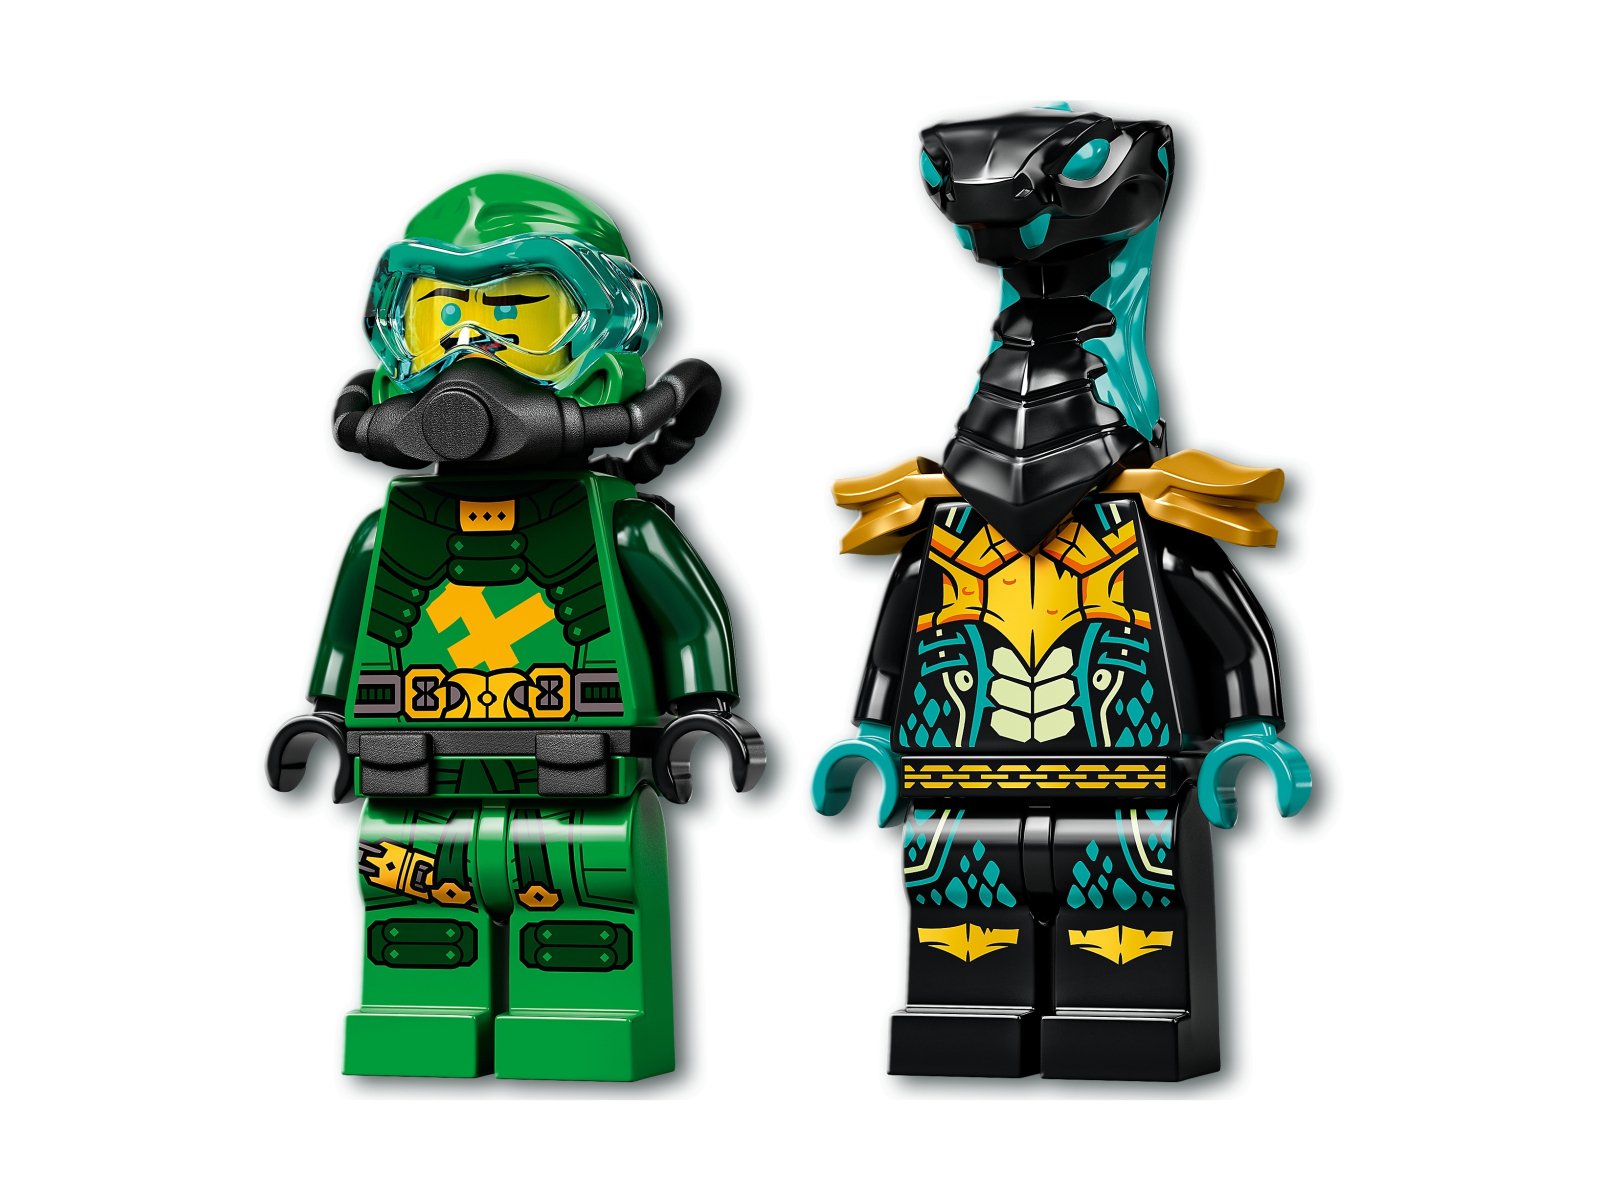 LEGO Ninjago Wodny mech Lloyda 71750